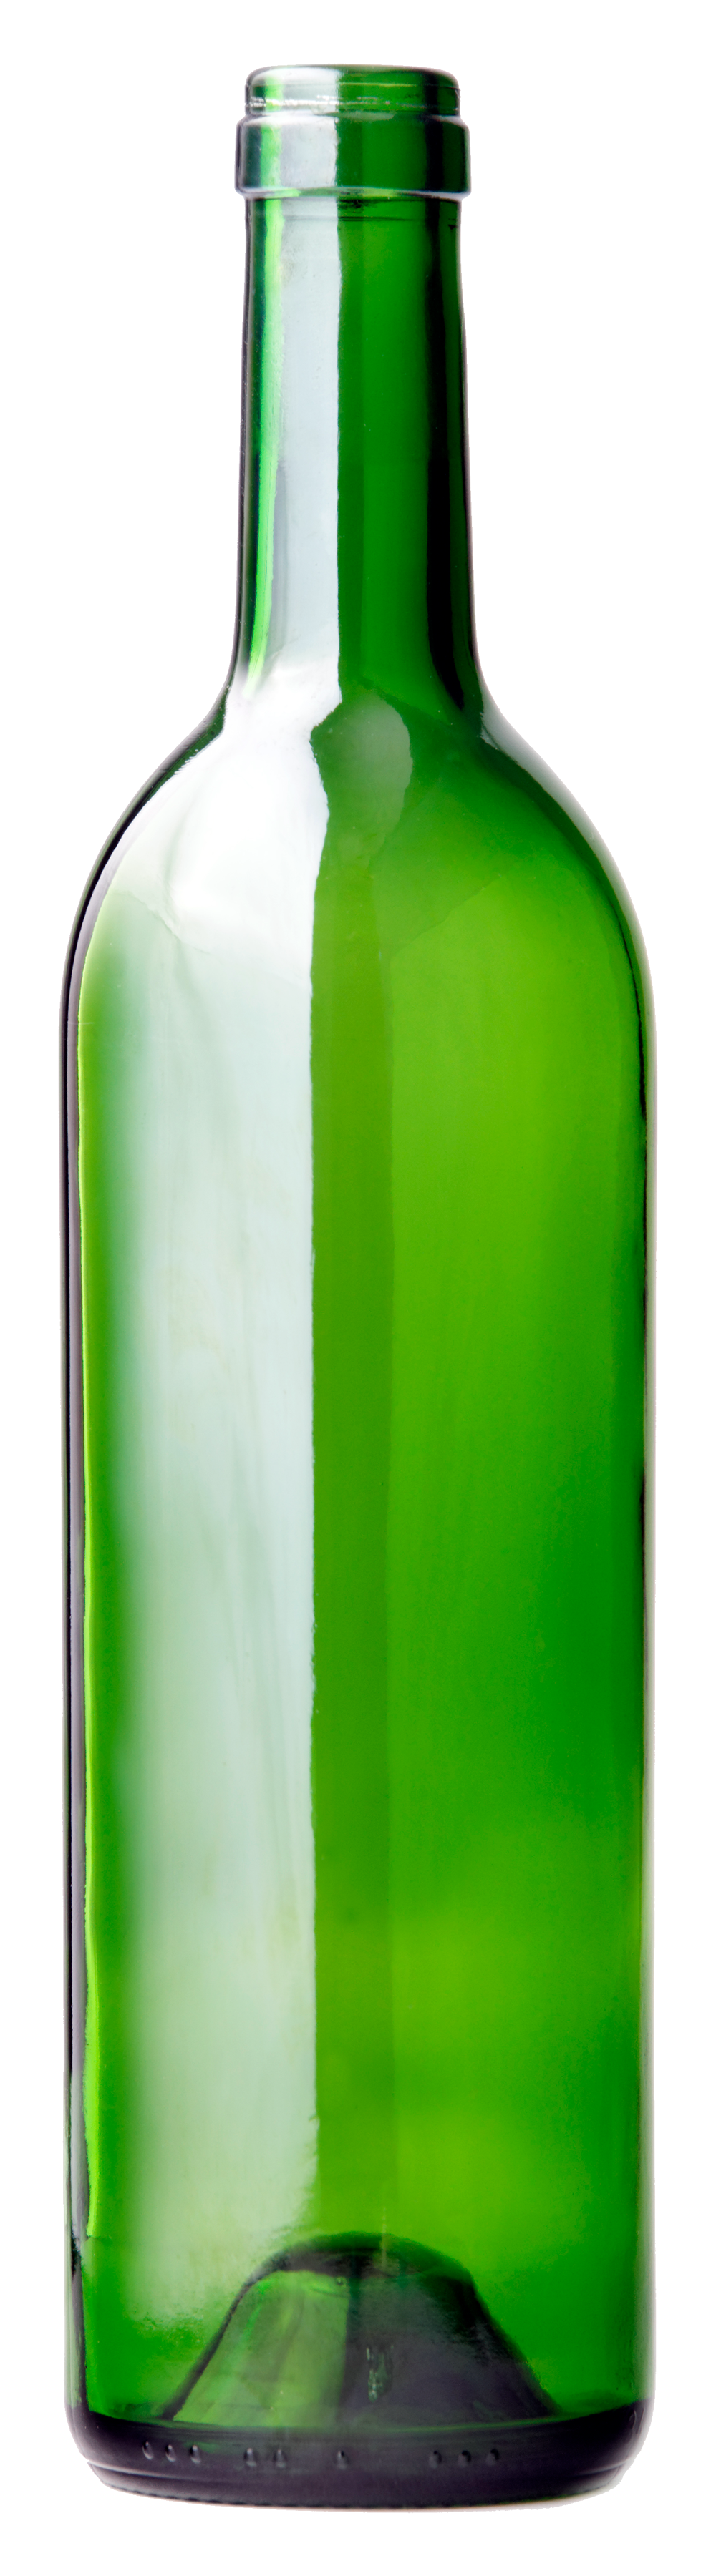 緑のガラスのワインボトル